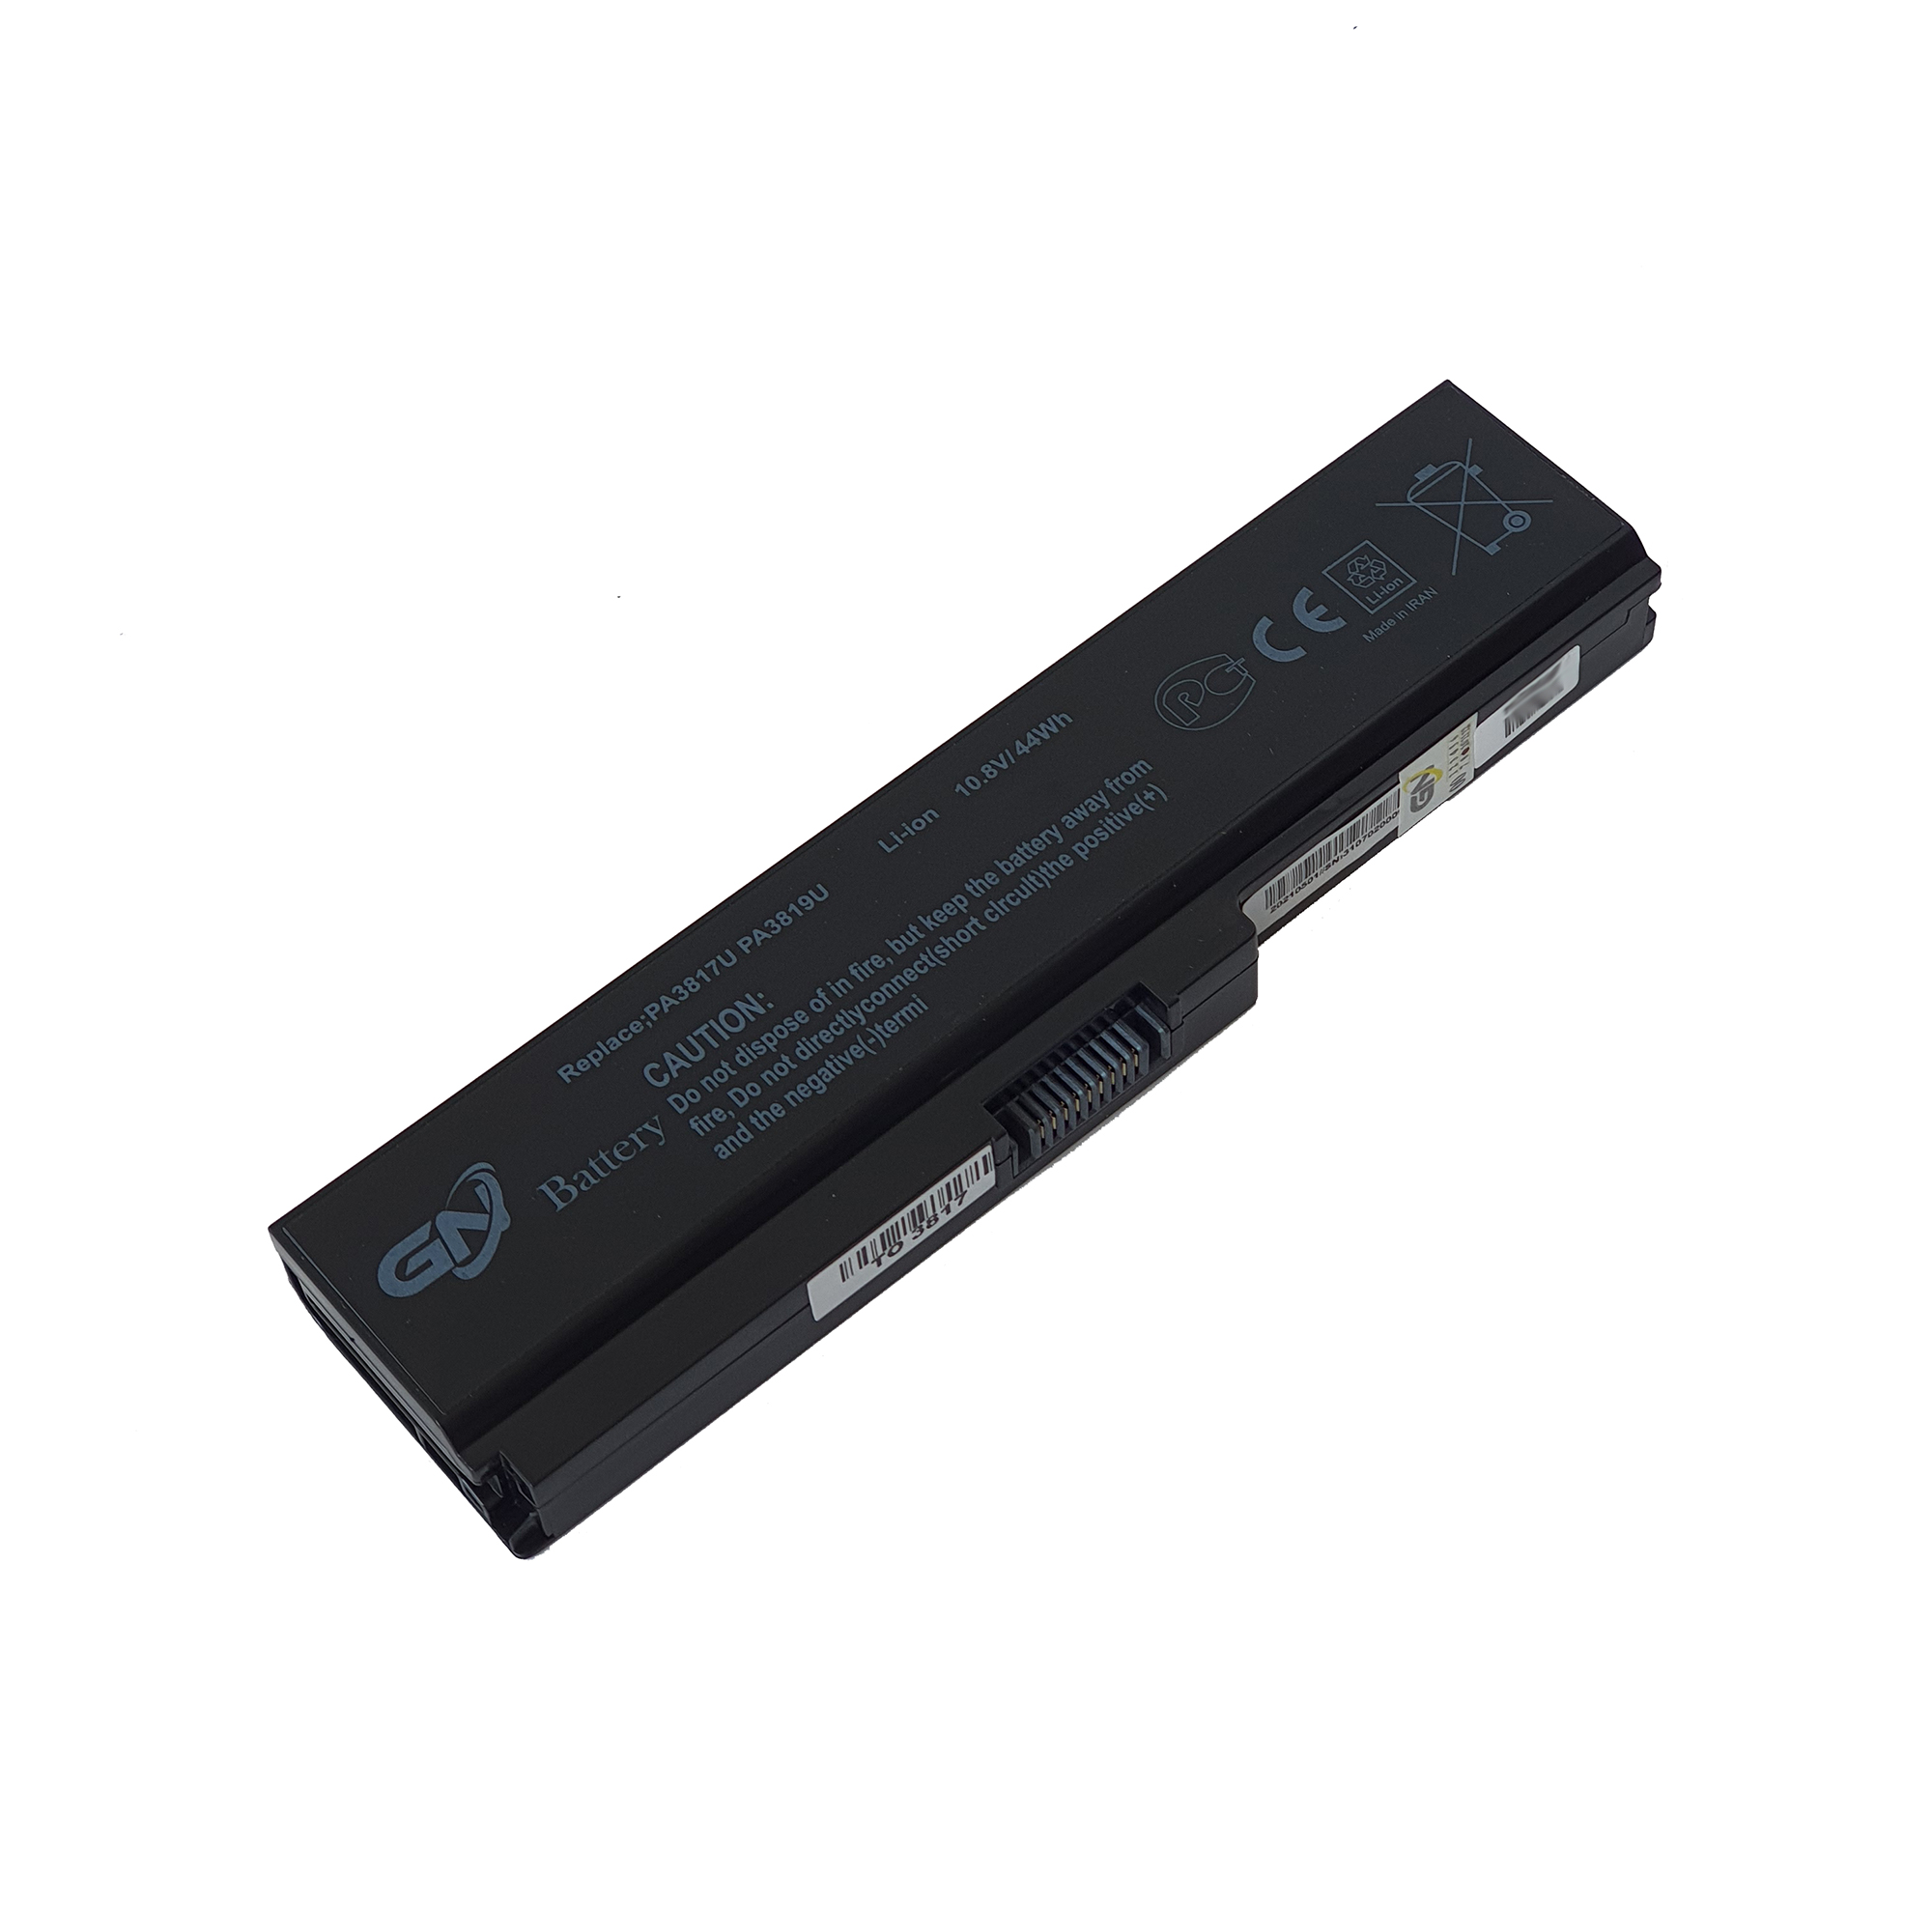 باتری لپ تاپ 6 سلولی گلدن نوت بوک مدل 3817 مناسب برای لپ تاپ توشیبا Satellite C655/C675/L645/L655/L675/L745/L755/P745/P755/P775/M645/A660/A655